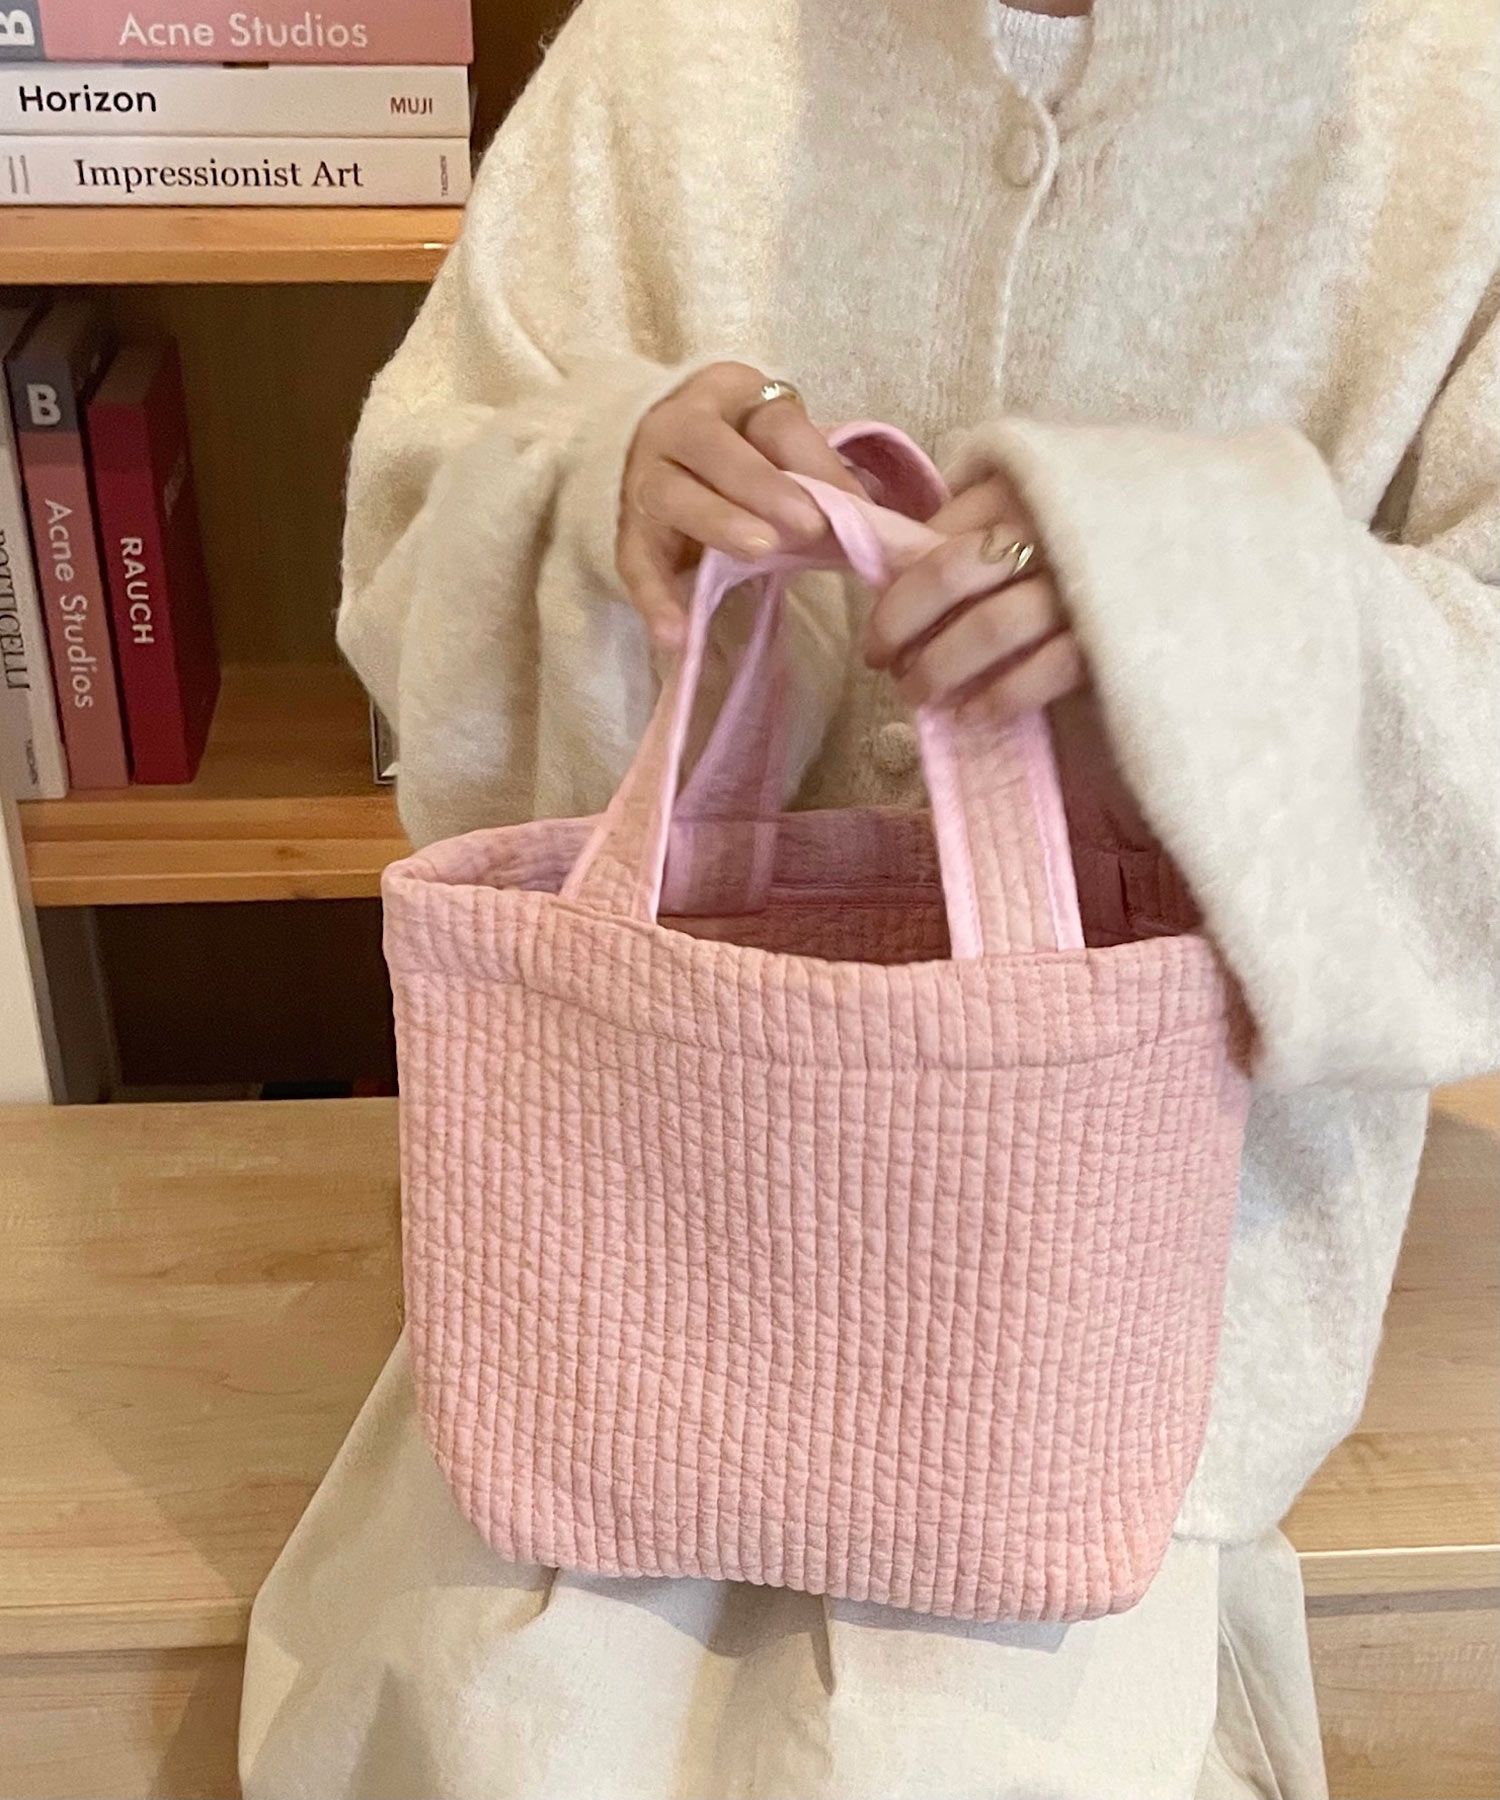 韓国製 イブル素材 ヌビバッグ ma 【即納】 鞄 バッグ ヌビバッグ